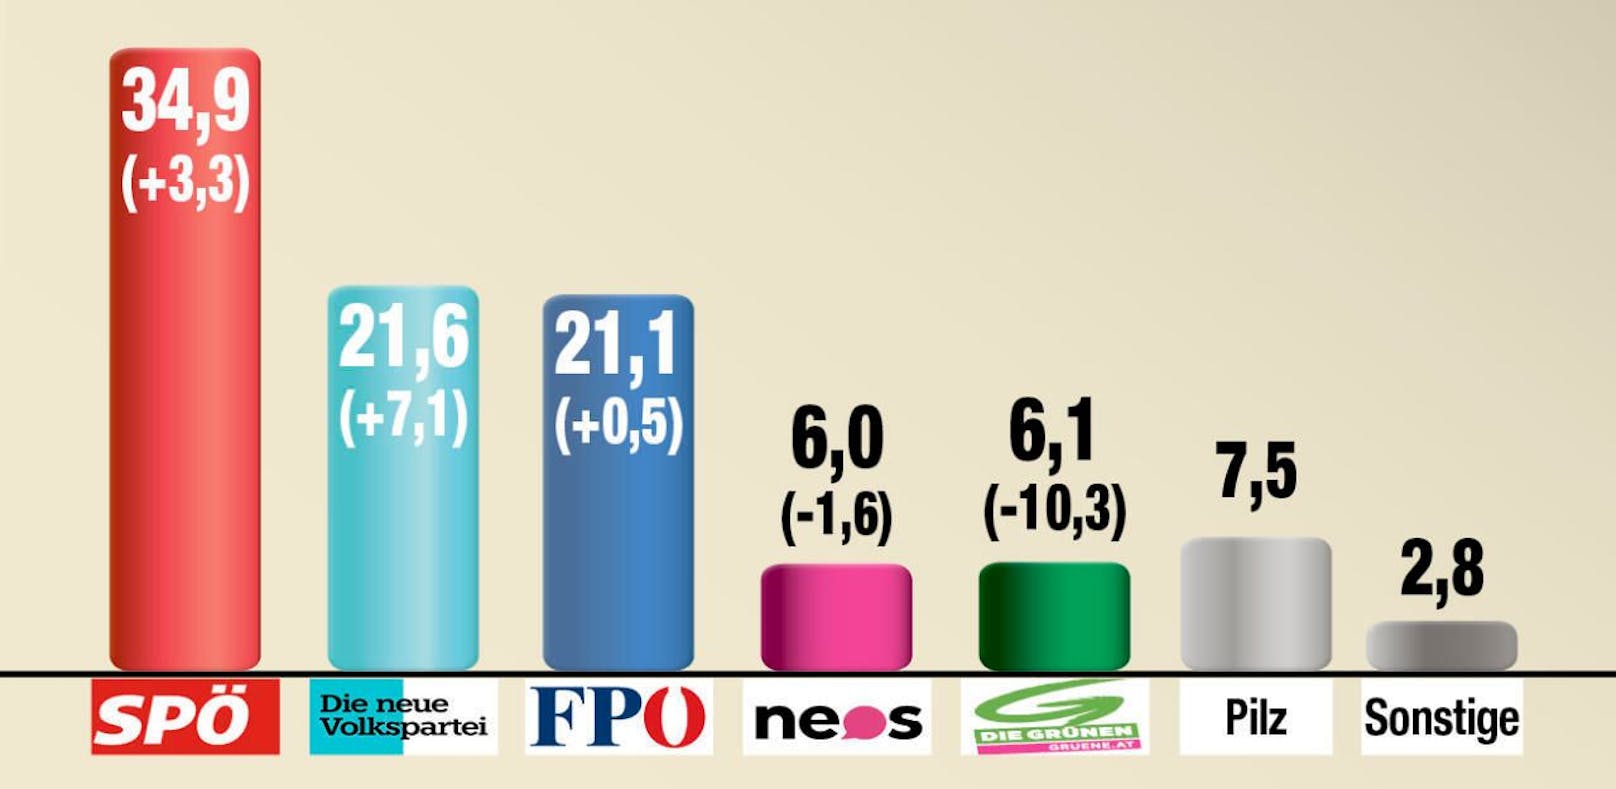 SPÖ bleibt in Wien laut Hochrechnung mit 34,9 Prozent die stärkste Kraft.